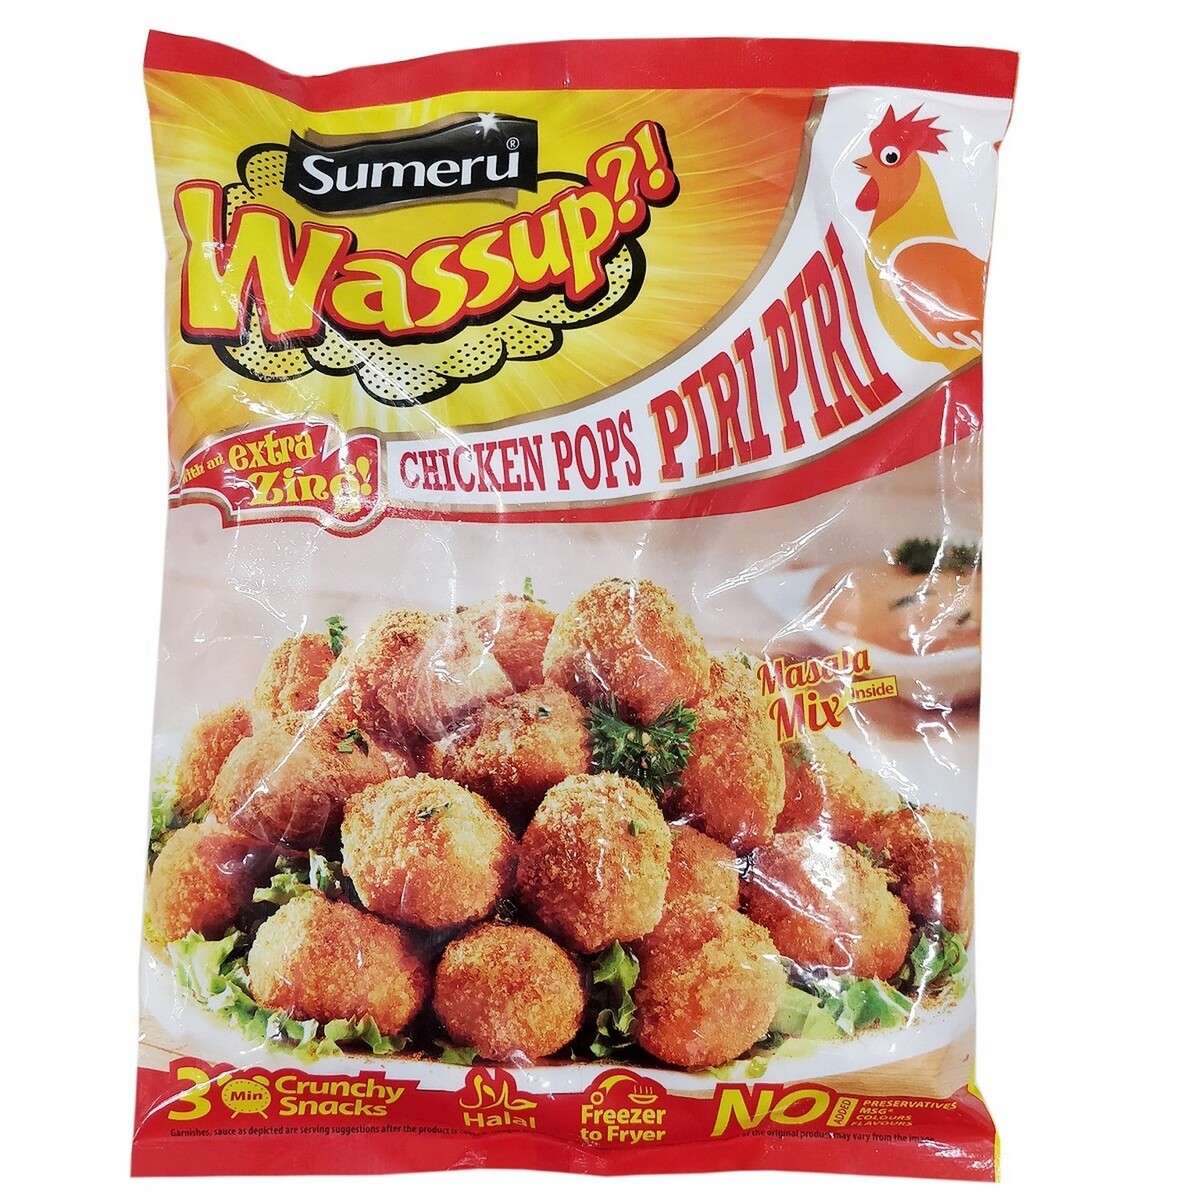 Sumeru Chicken Popcorn Piri Piri 450g